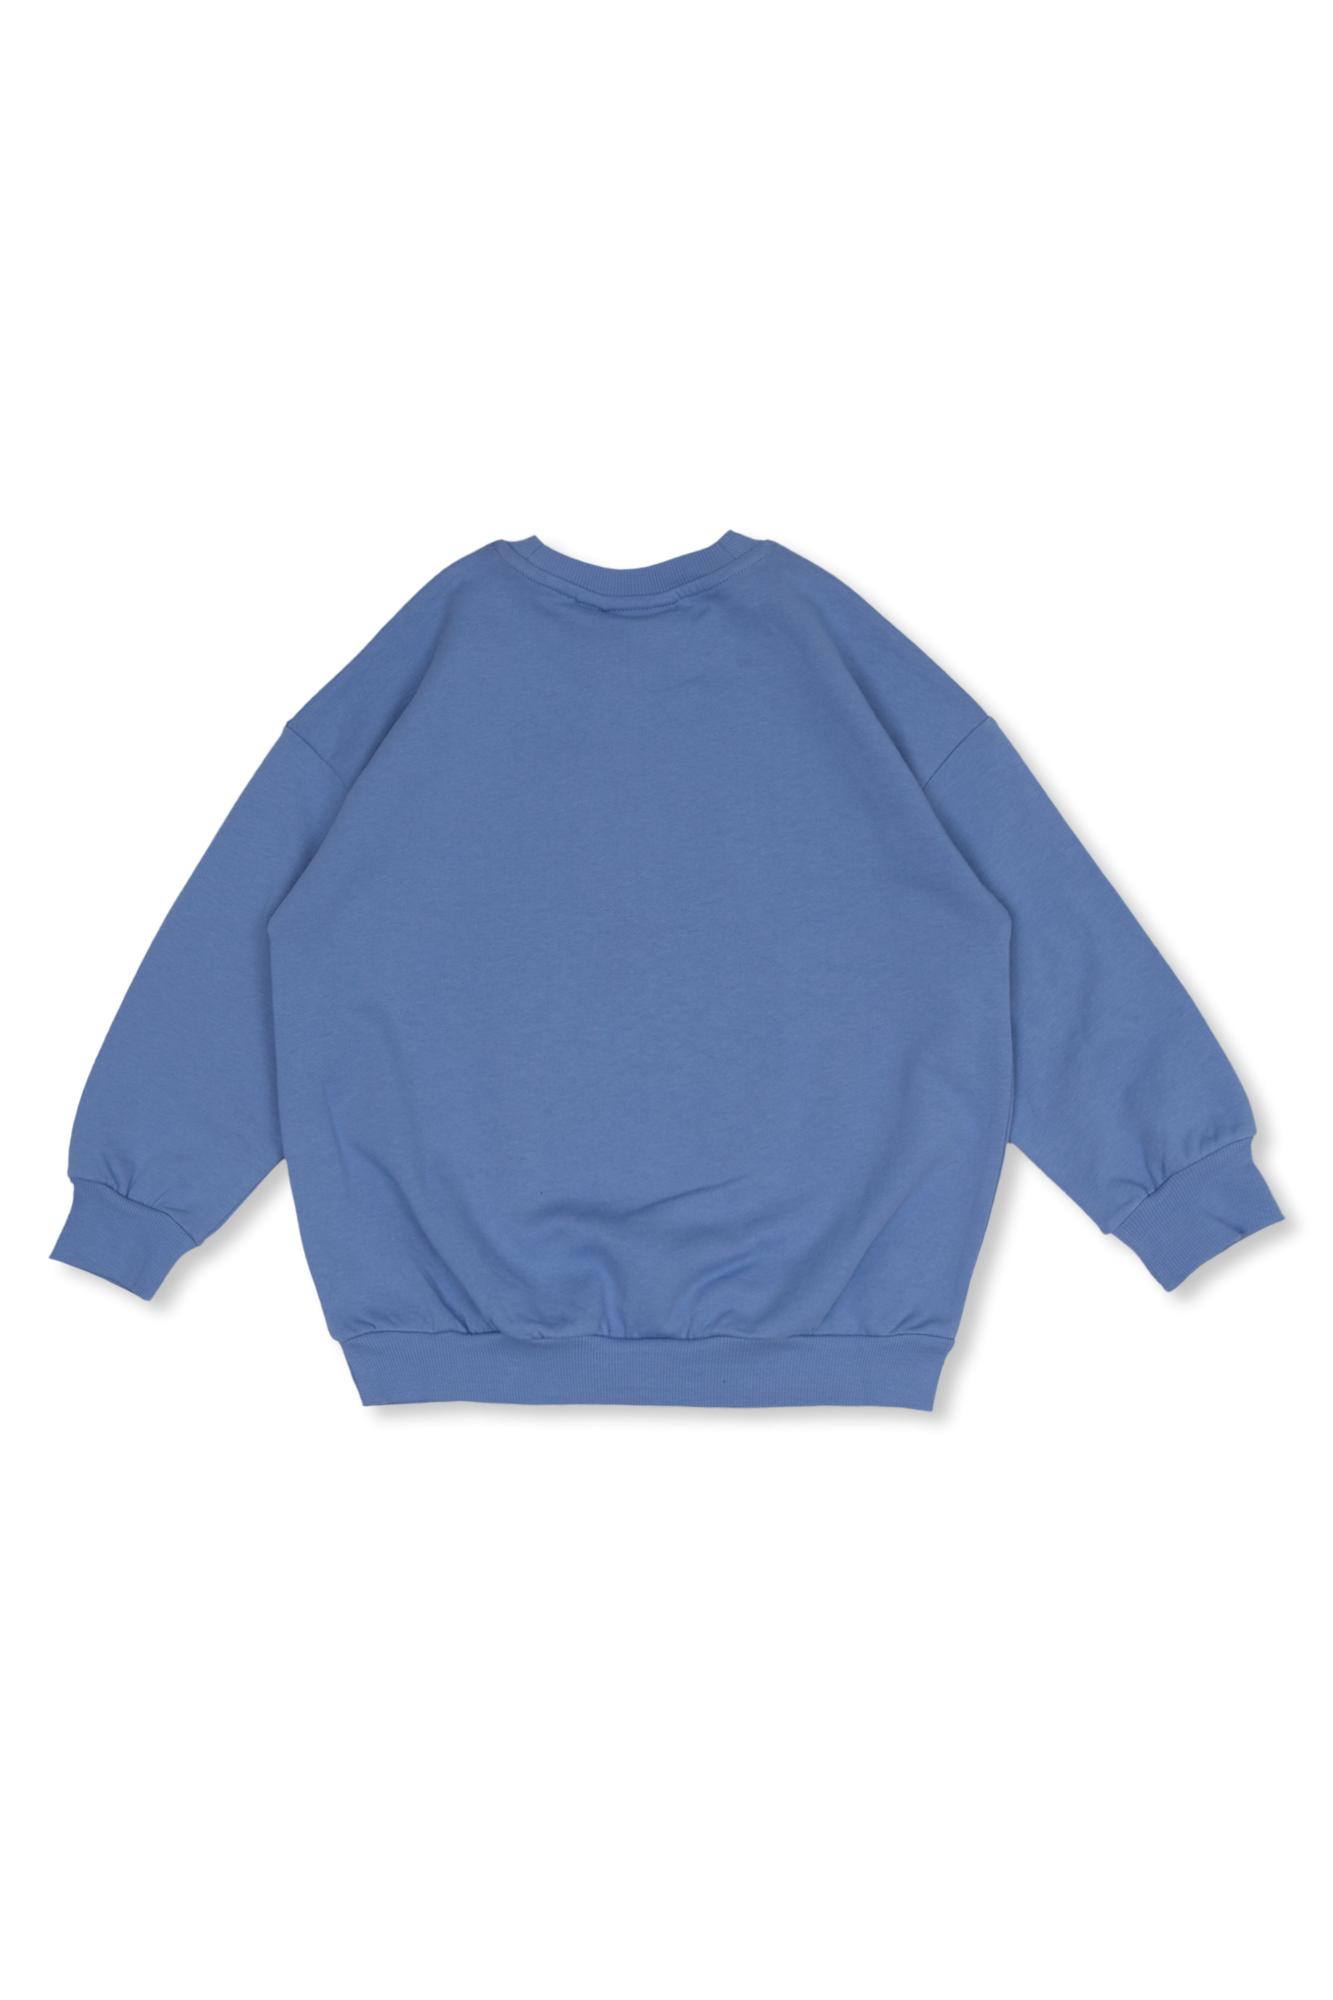 Mini Rodini Cotton sweatshirt